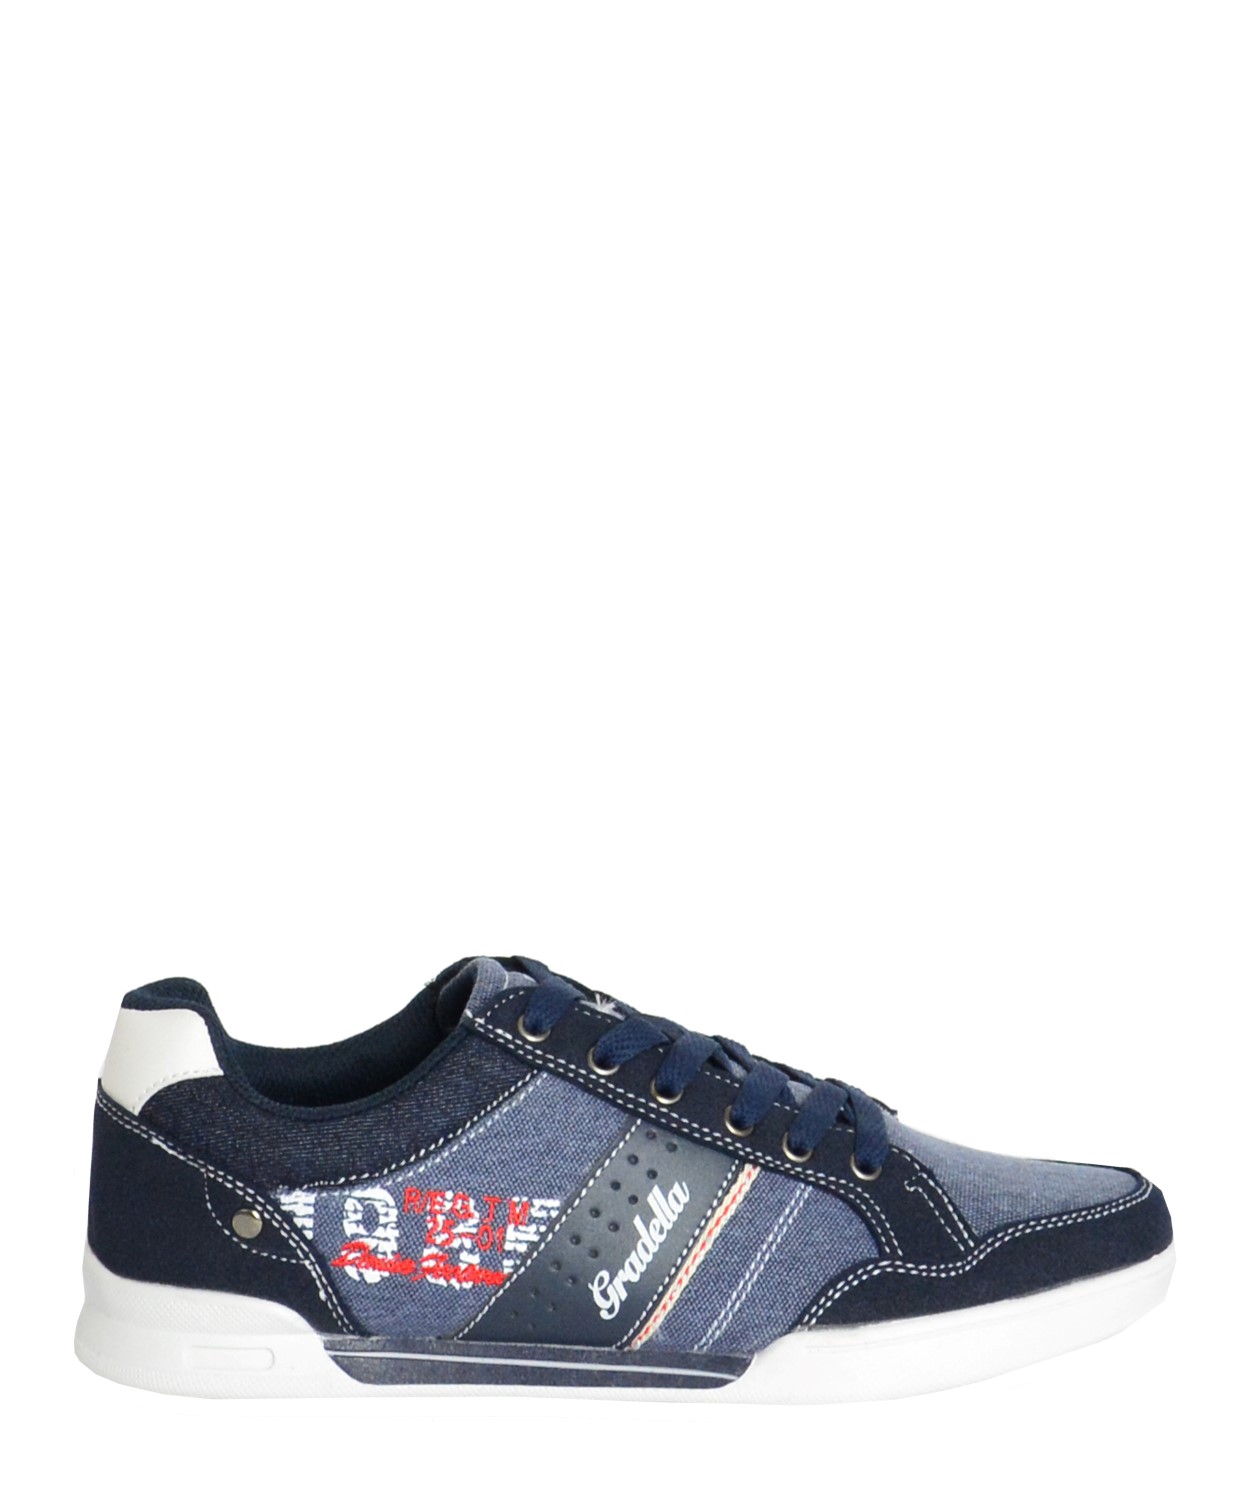 Ανδρικά Casual παπούτσια μπλε χαμηλά κορδόνια K70422W